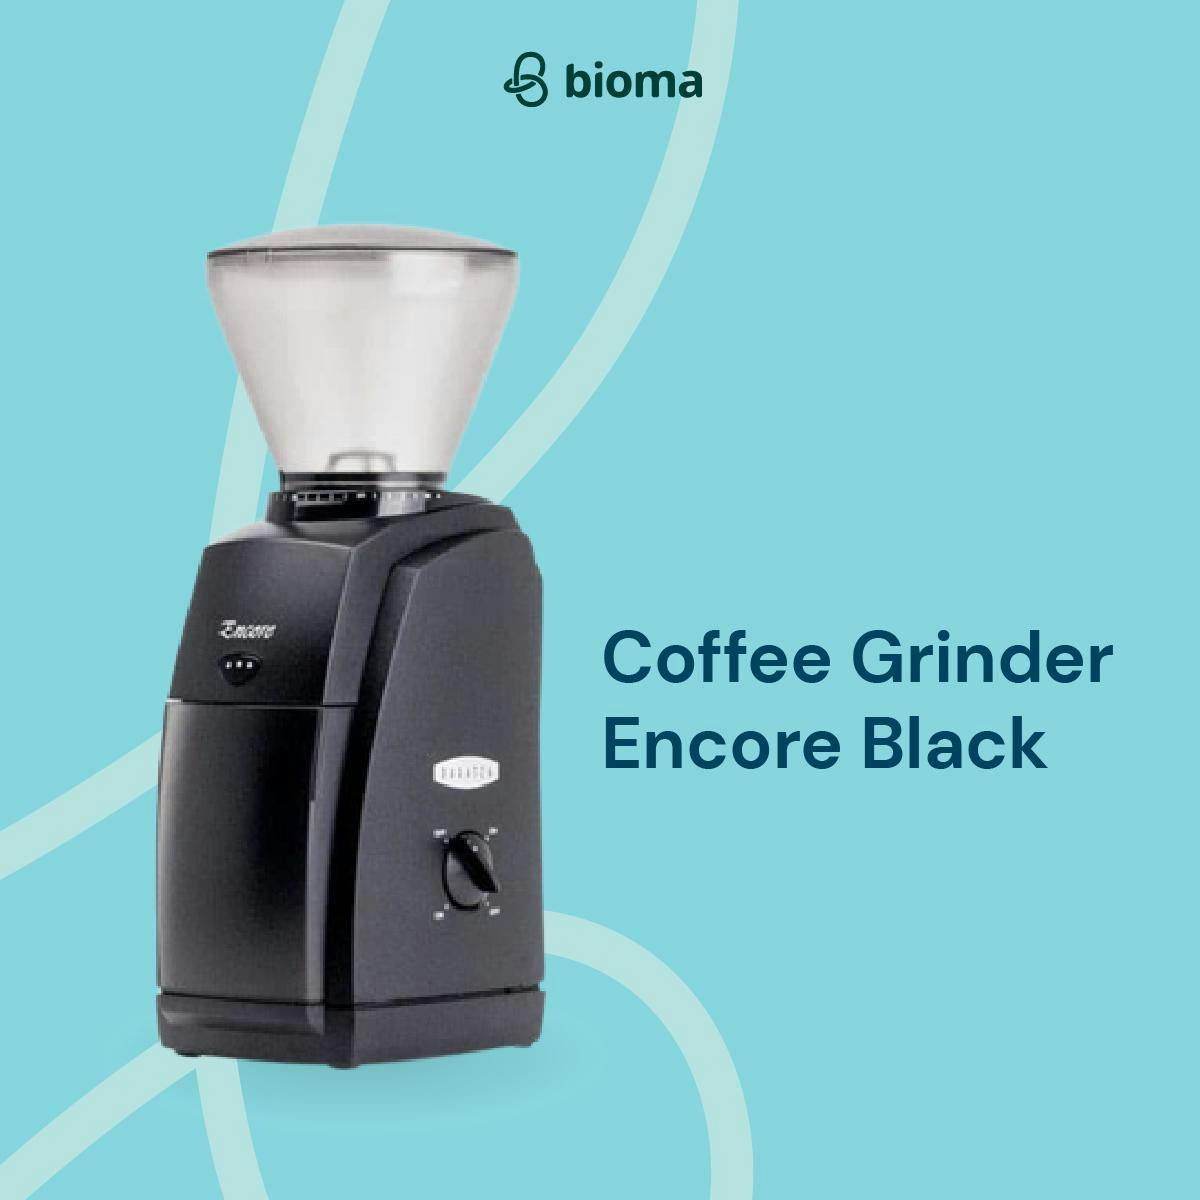 Coffee Grinder Encore Black